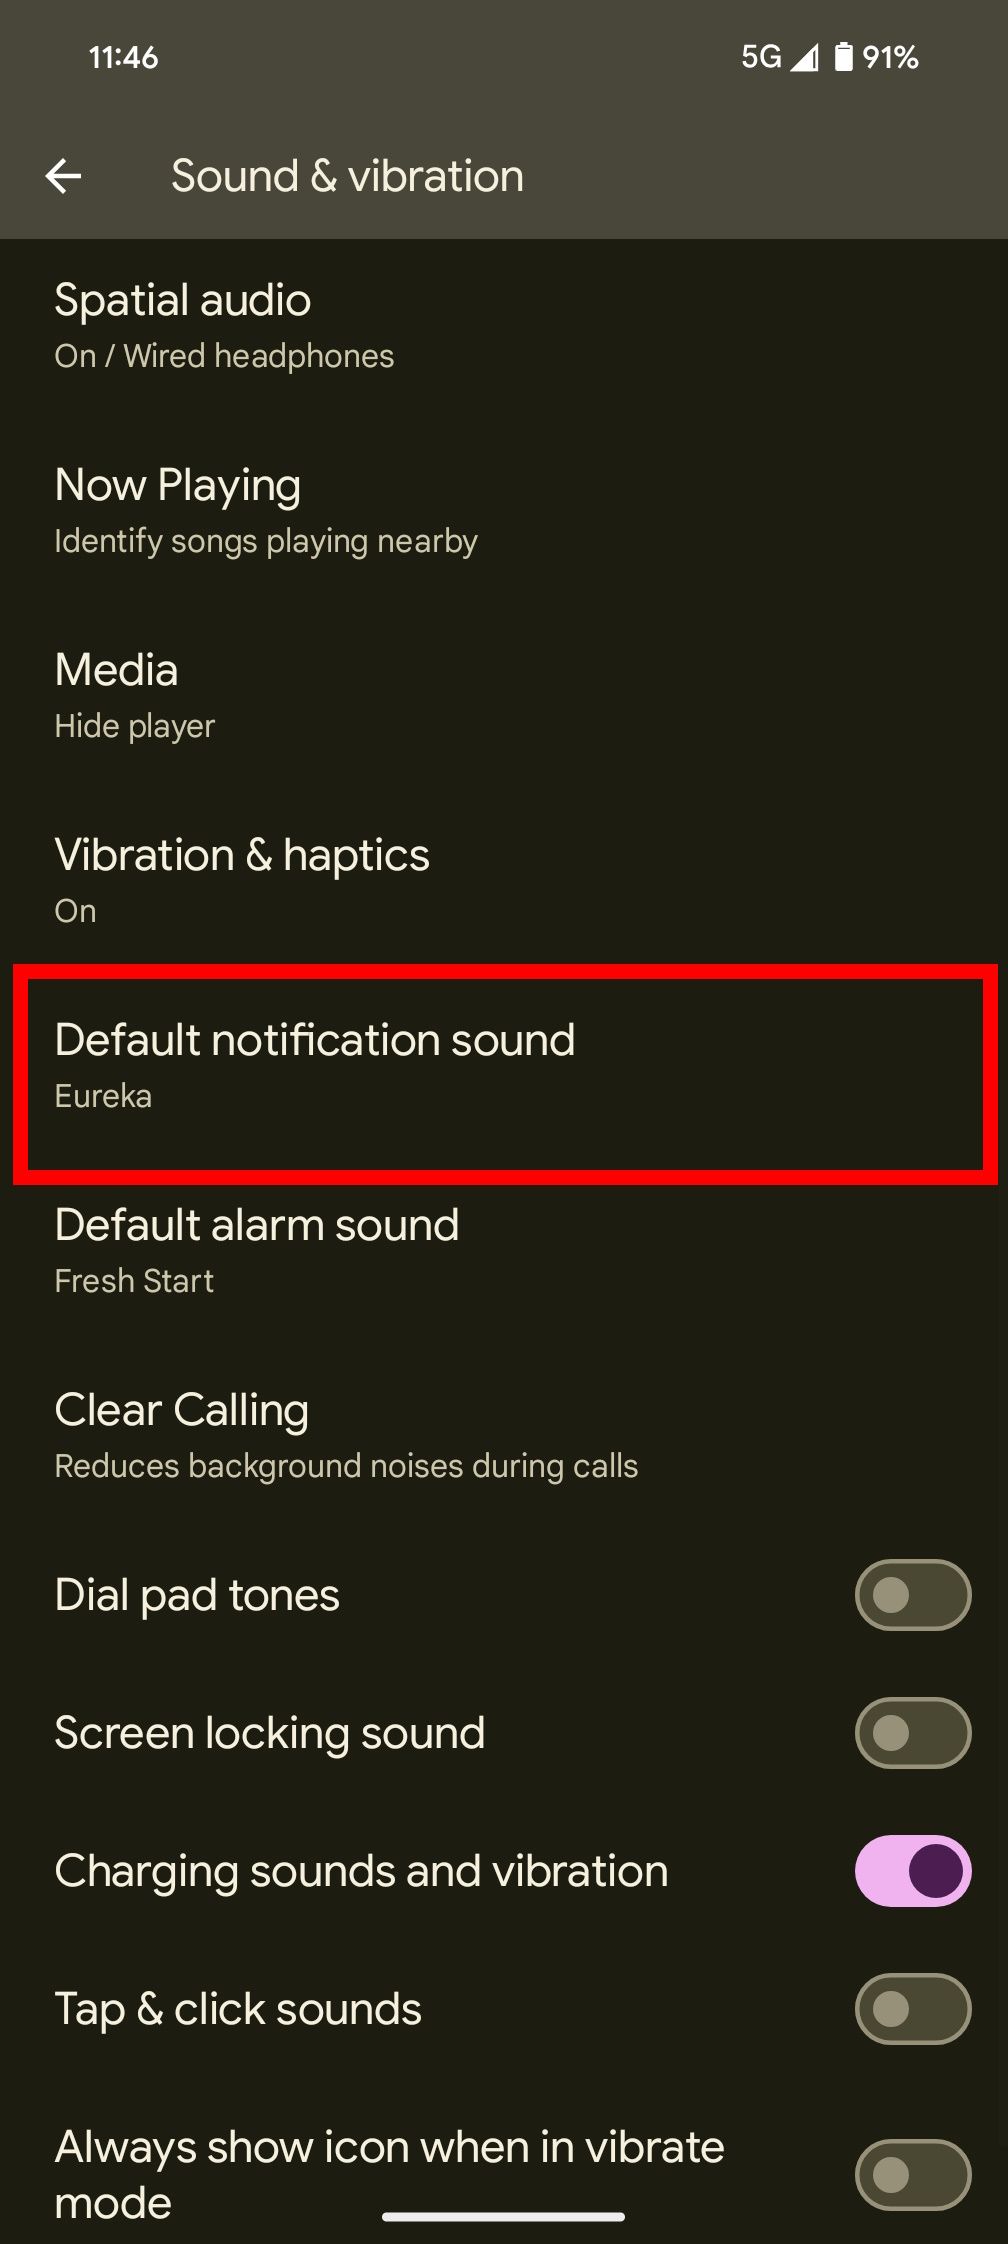 Garis persegi panjang berwarna merah di atas suara notifikasi default pada pengaturan Suara & getaran di ponsel Android